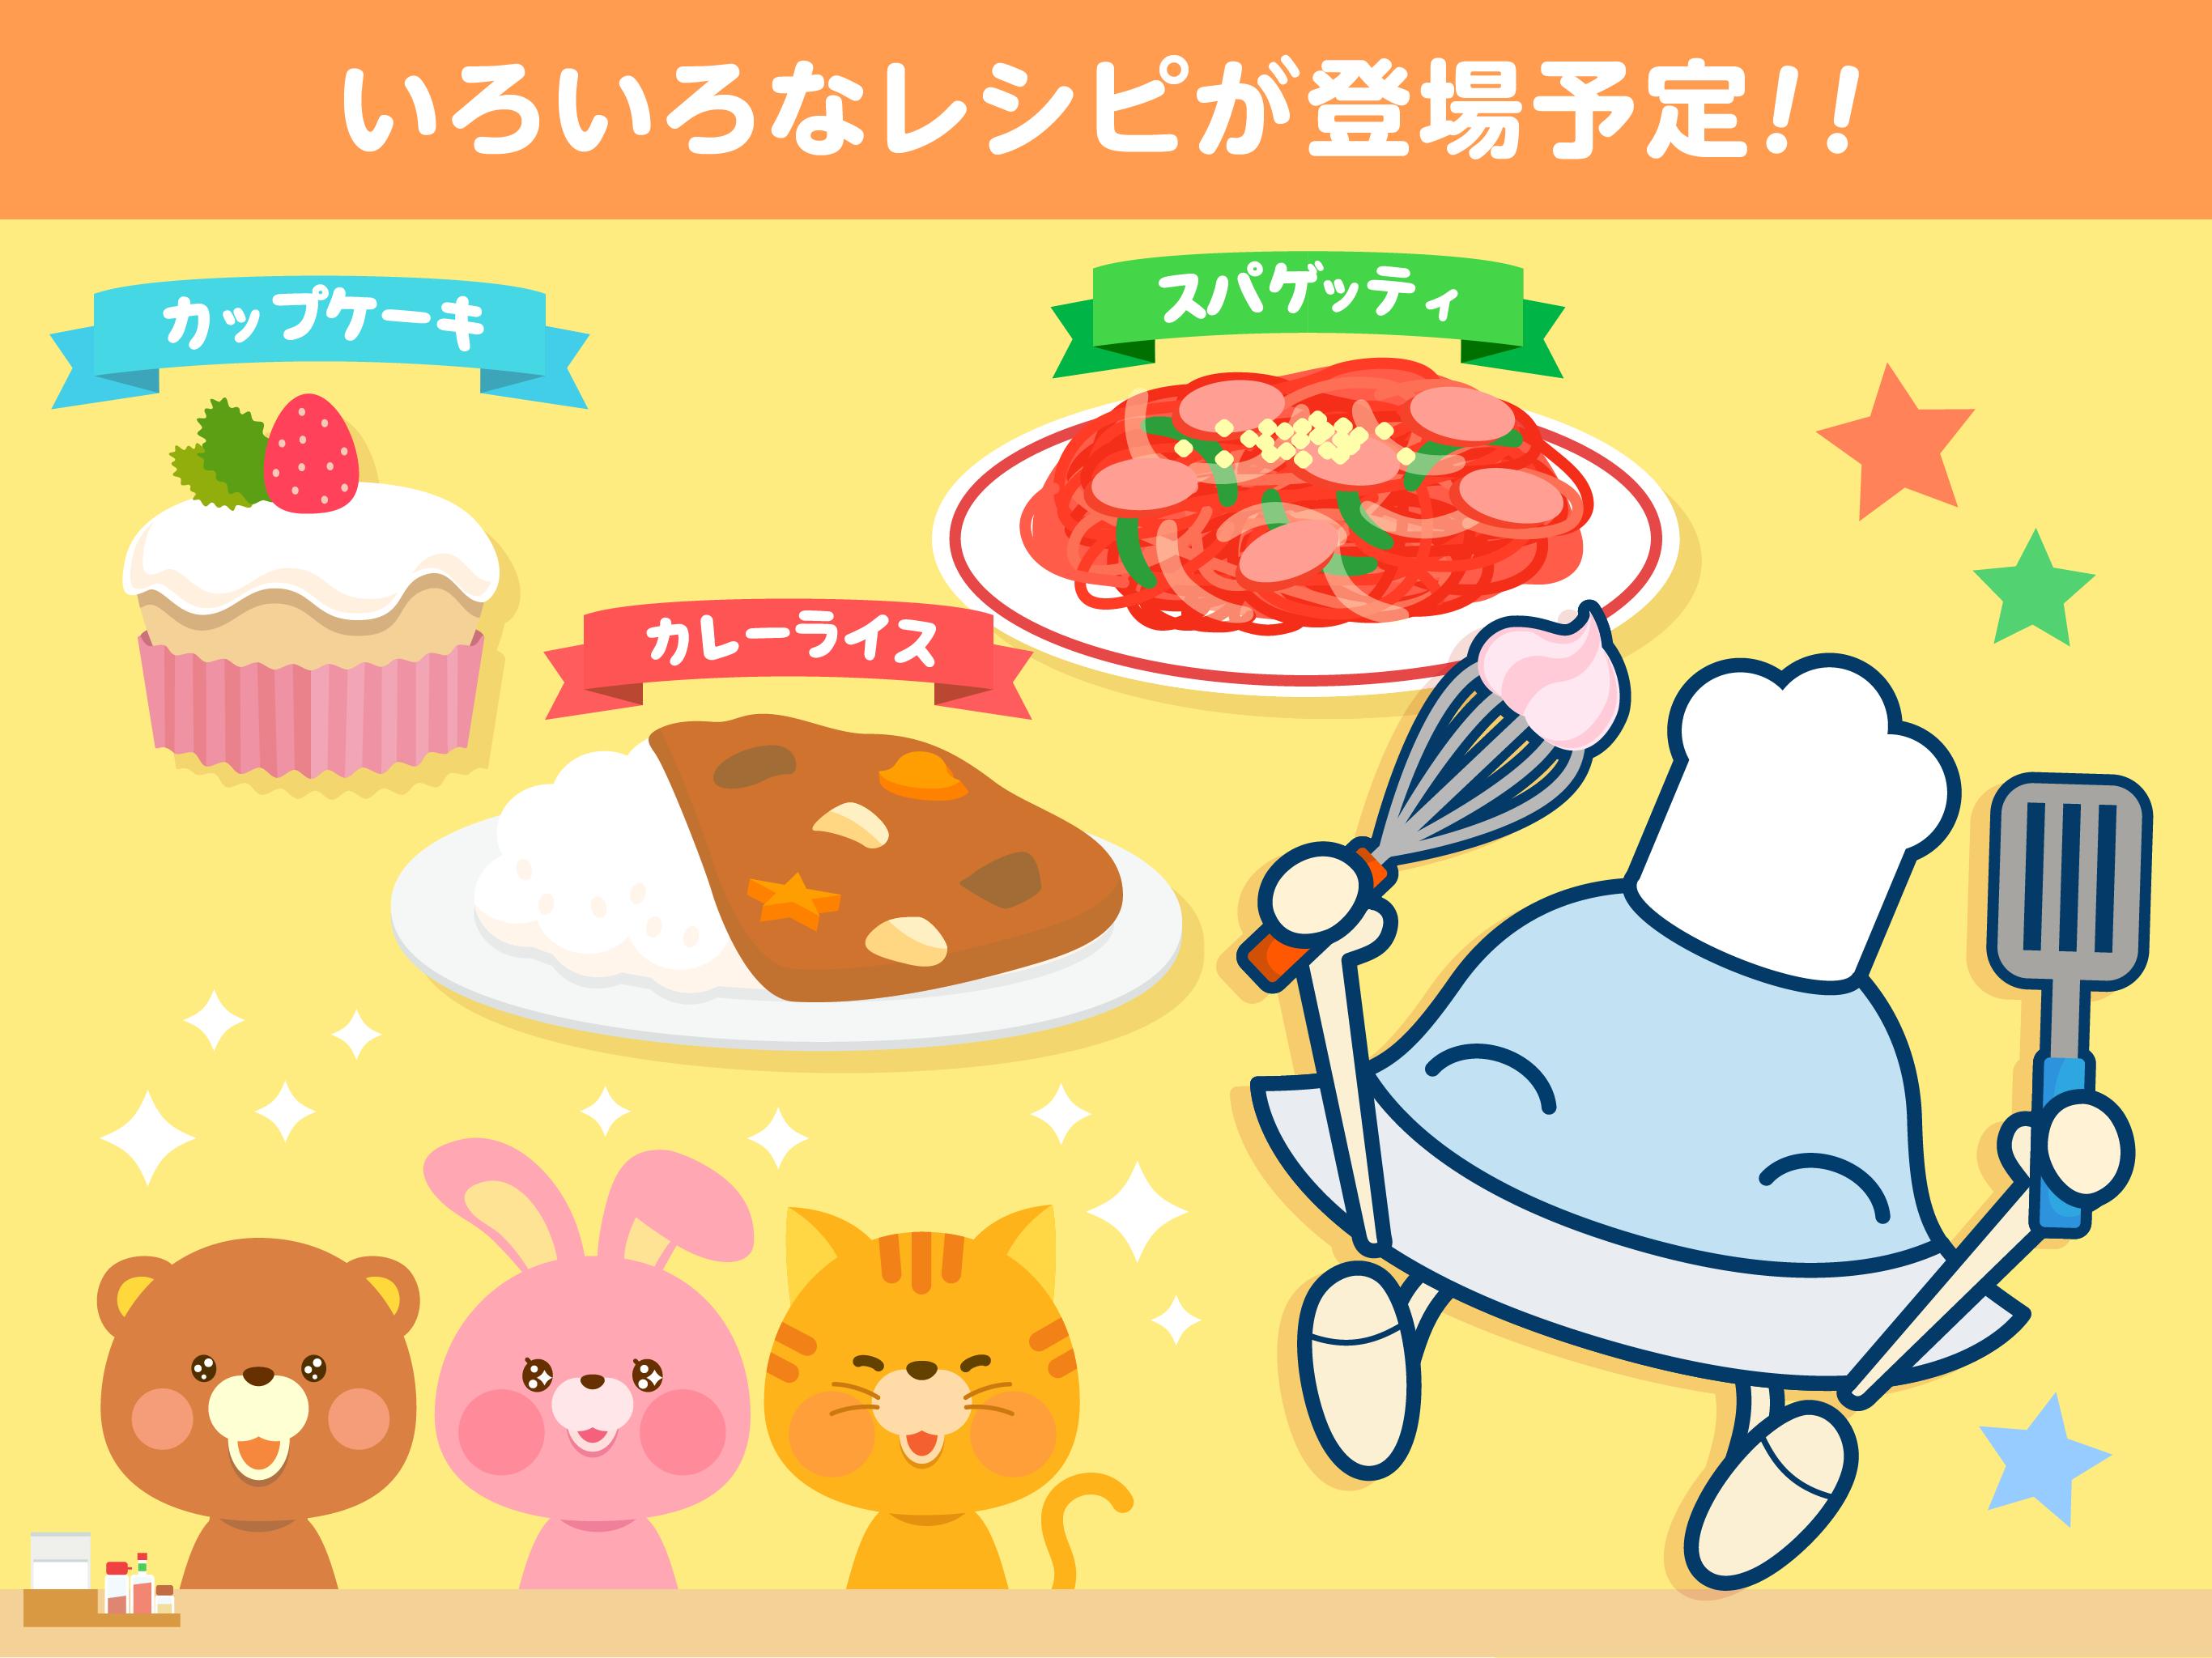 はらぺこクッキング お料理を作って楽しむ子供向け料理ゲームアプリ For Android Apk Download